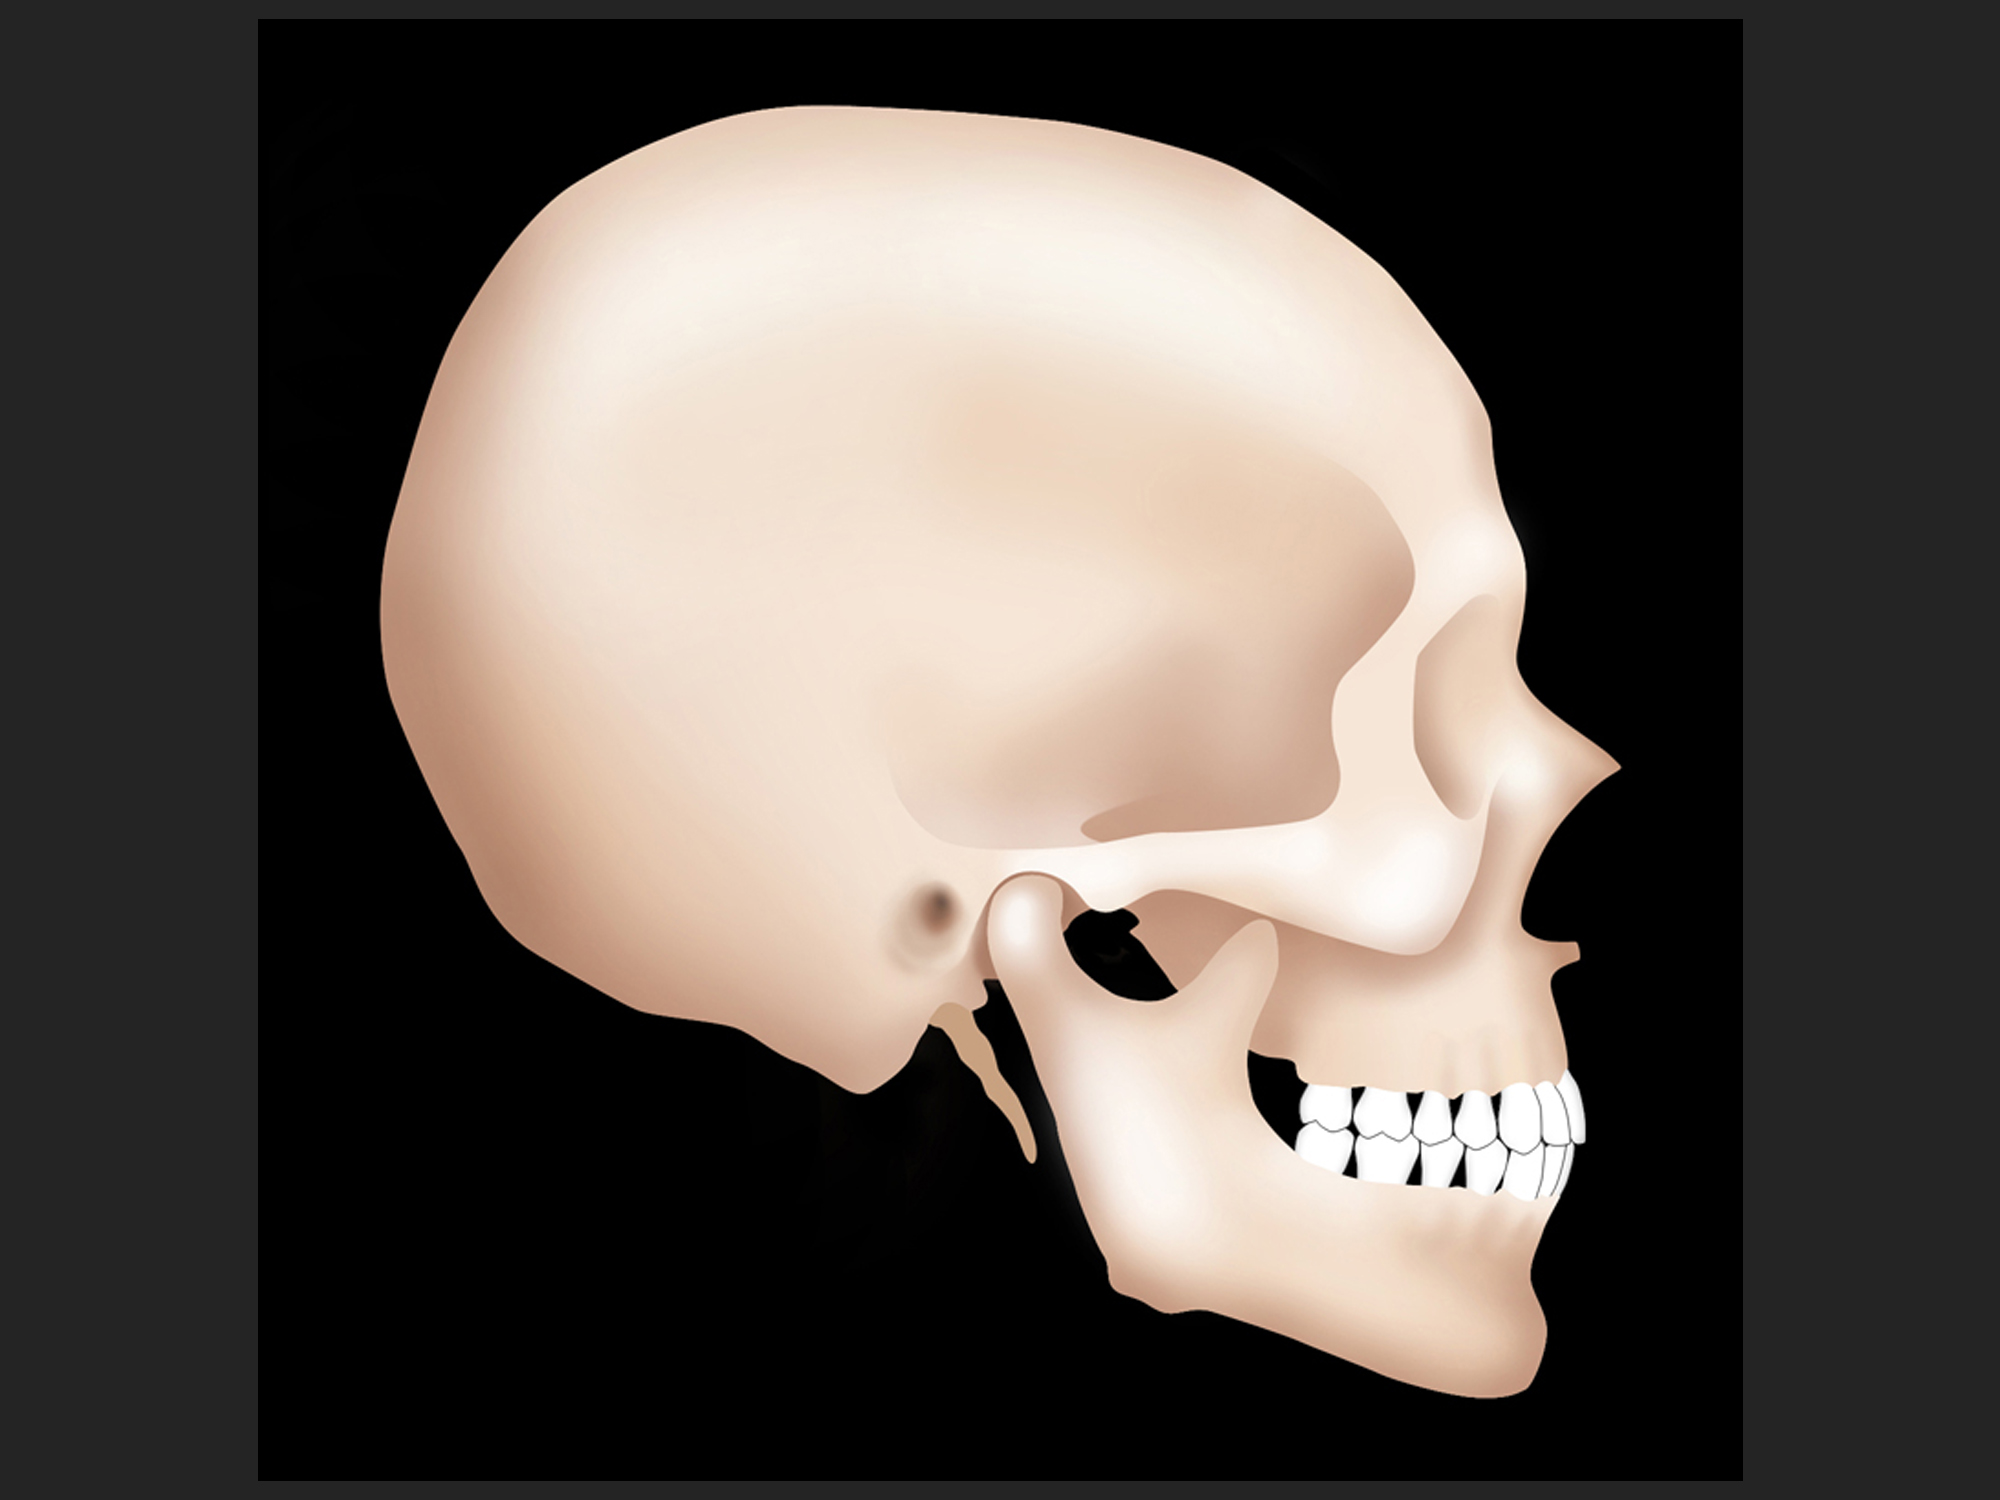 Skull in CR, Photoshop illustration for slide, 2004.